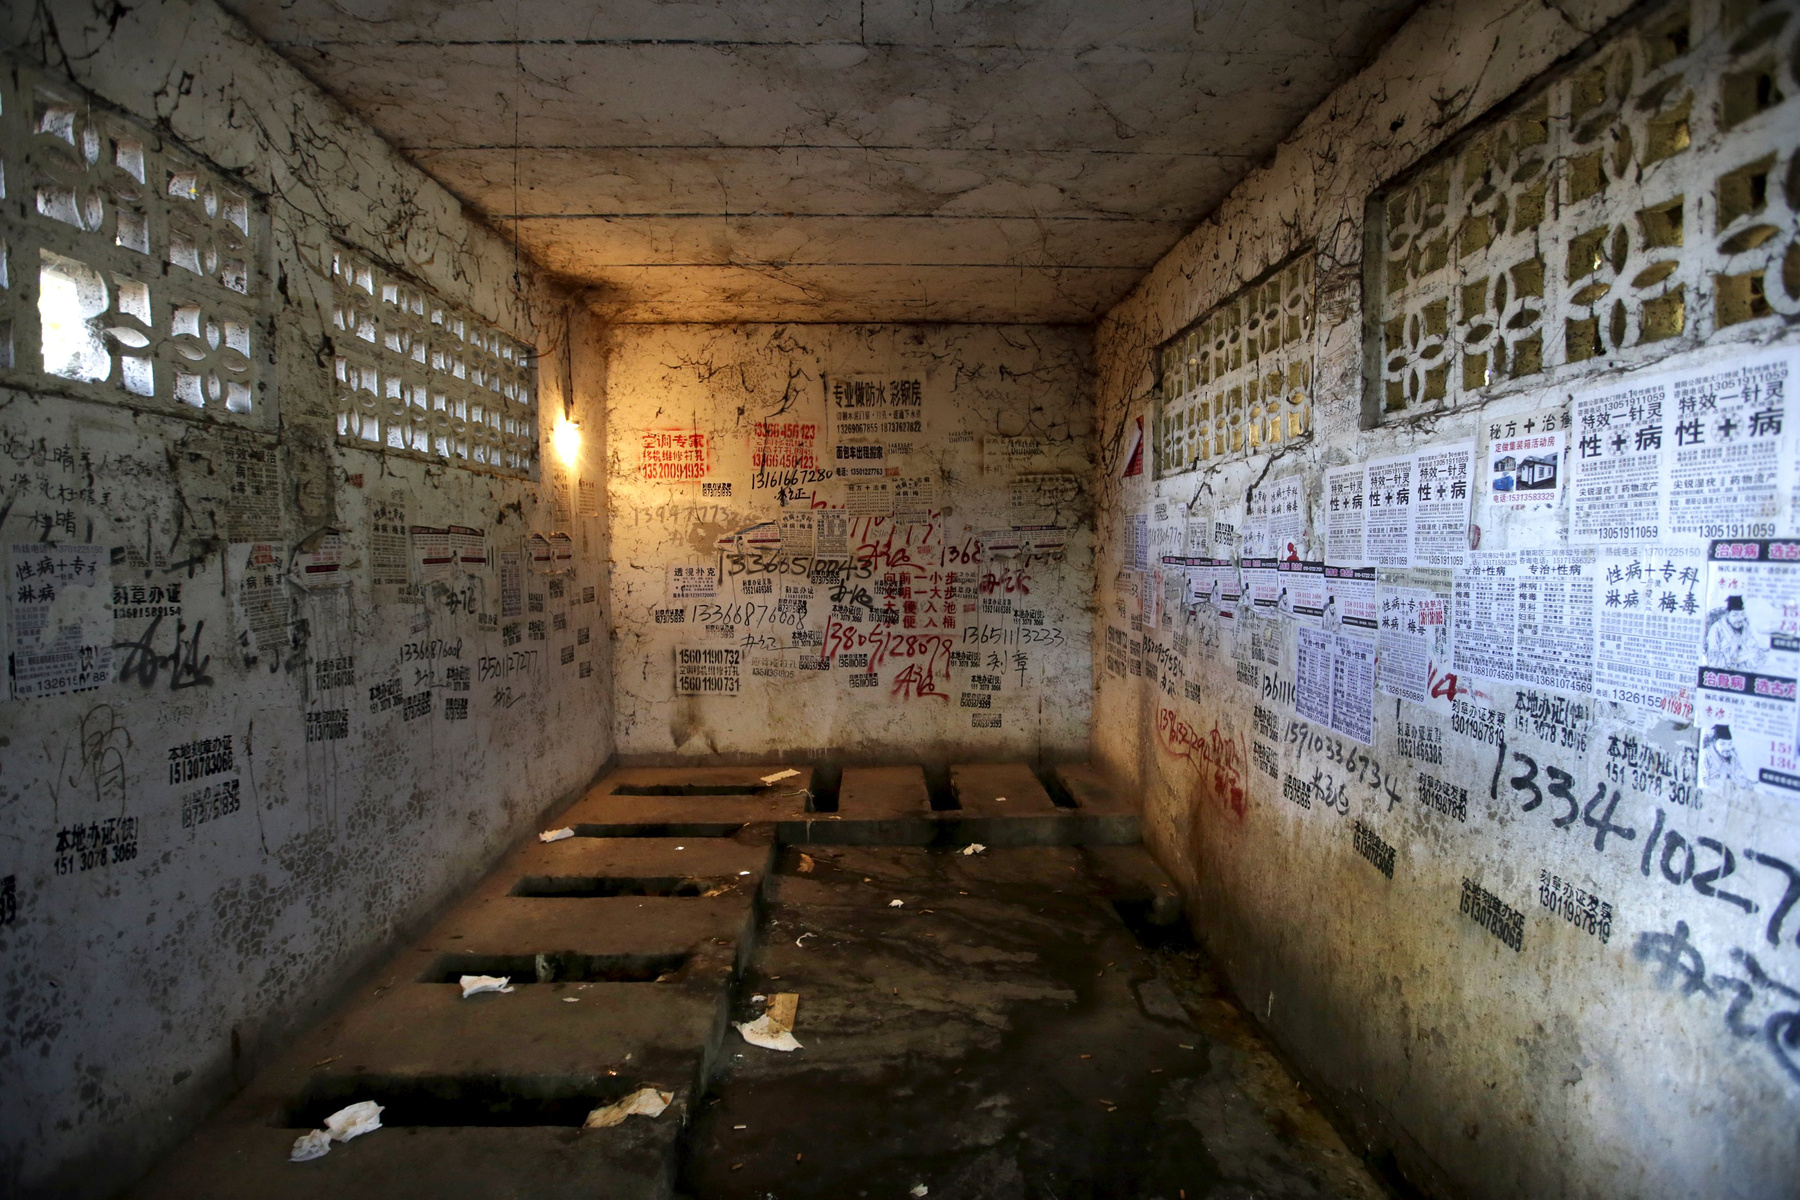 Egy jordániai fogolytáborban a nyilvános vécék és a barakkok között csak méretbeli különbség van.